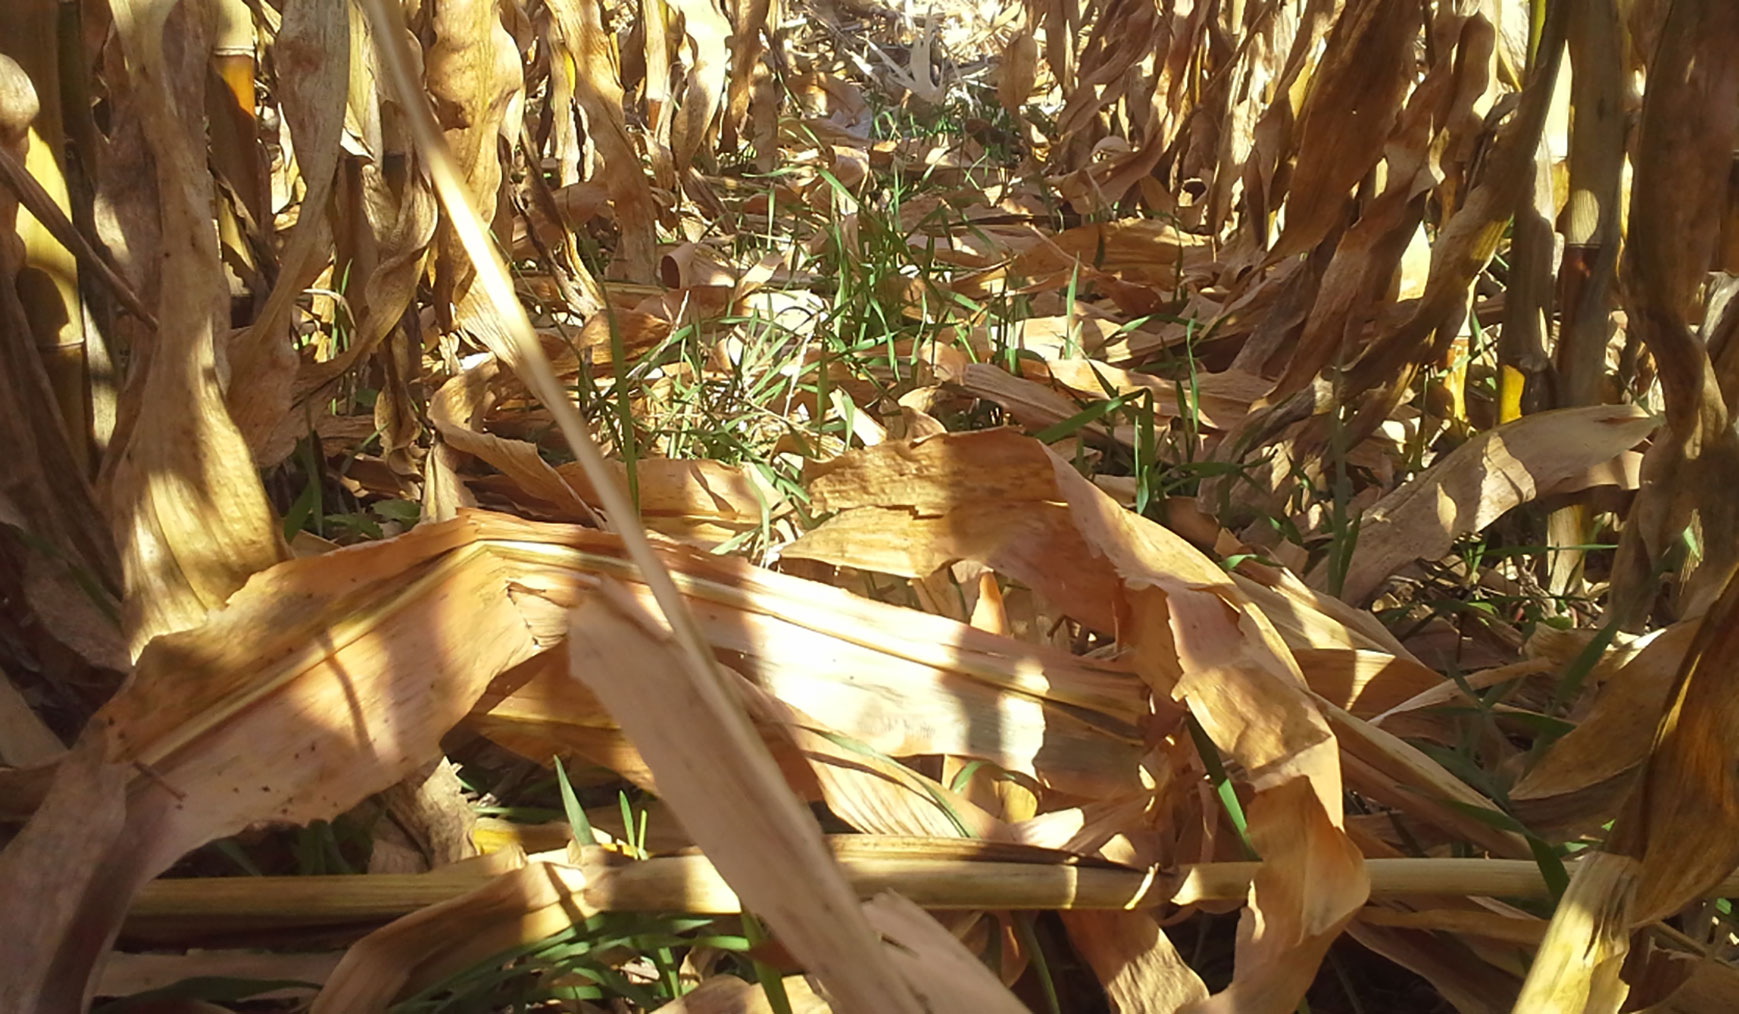 Green blades of rye growing amongst brown corn stalks.